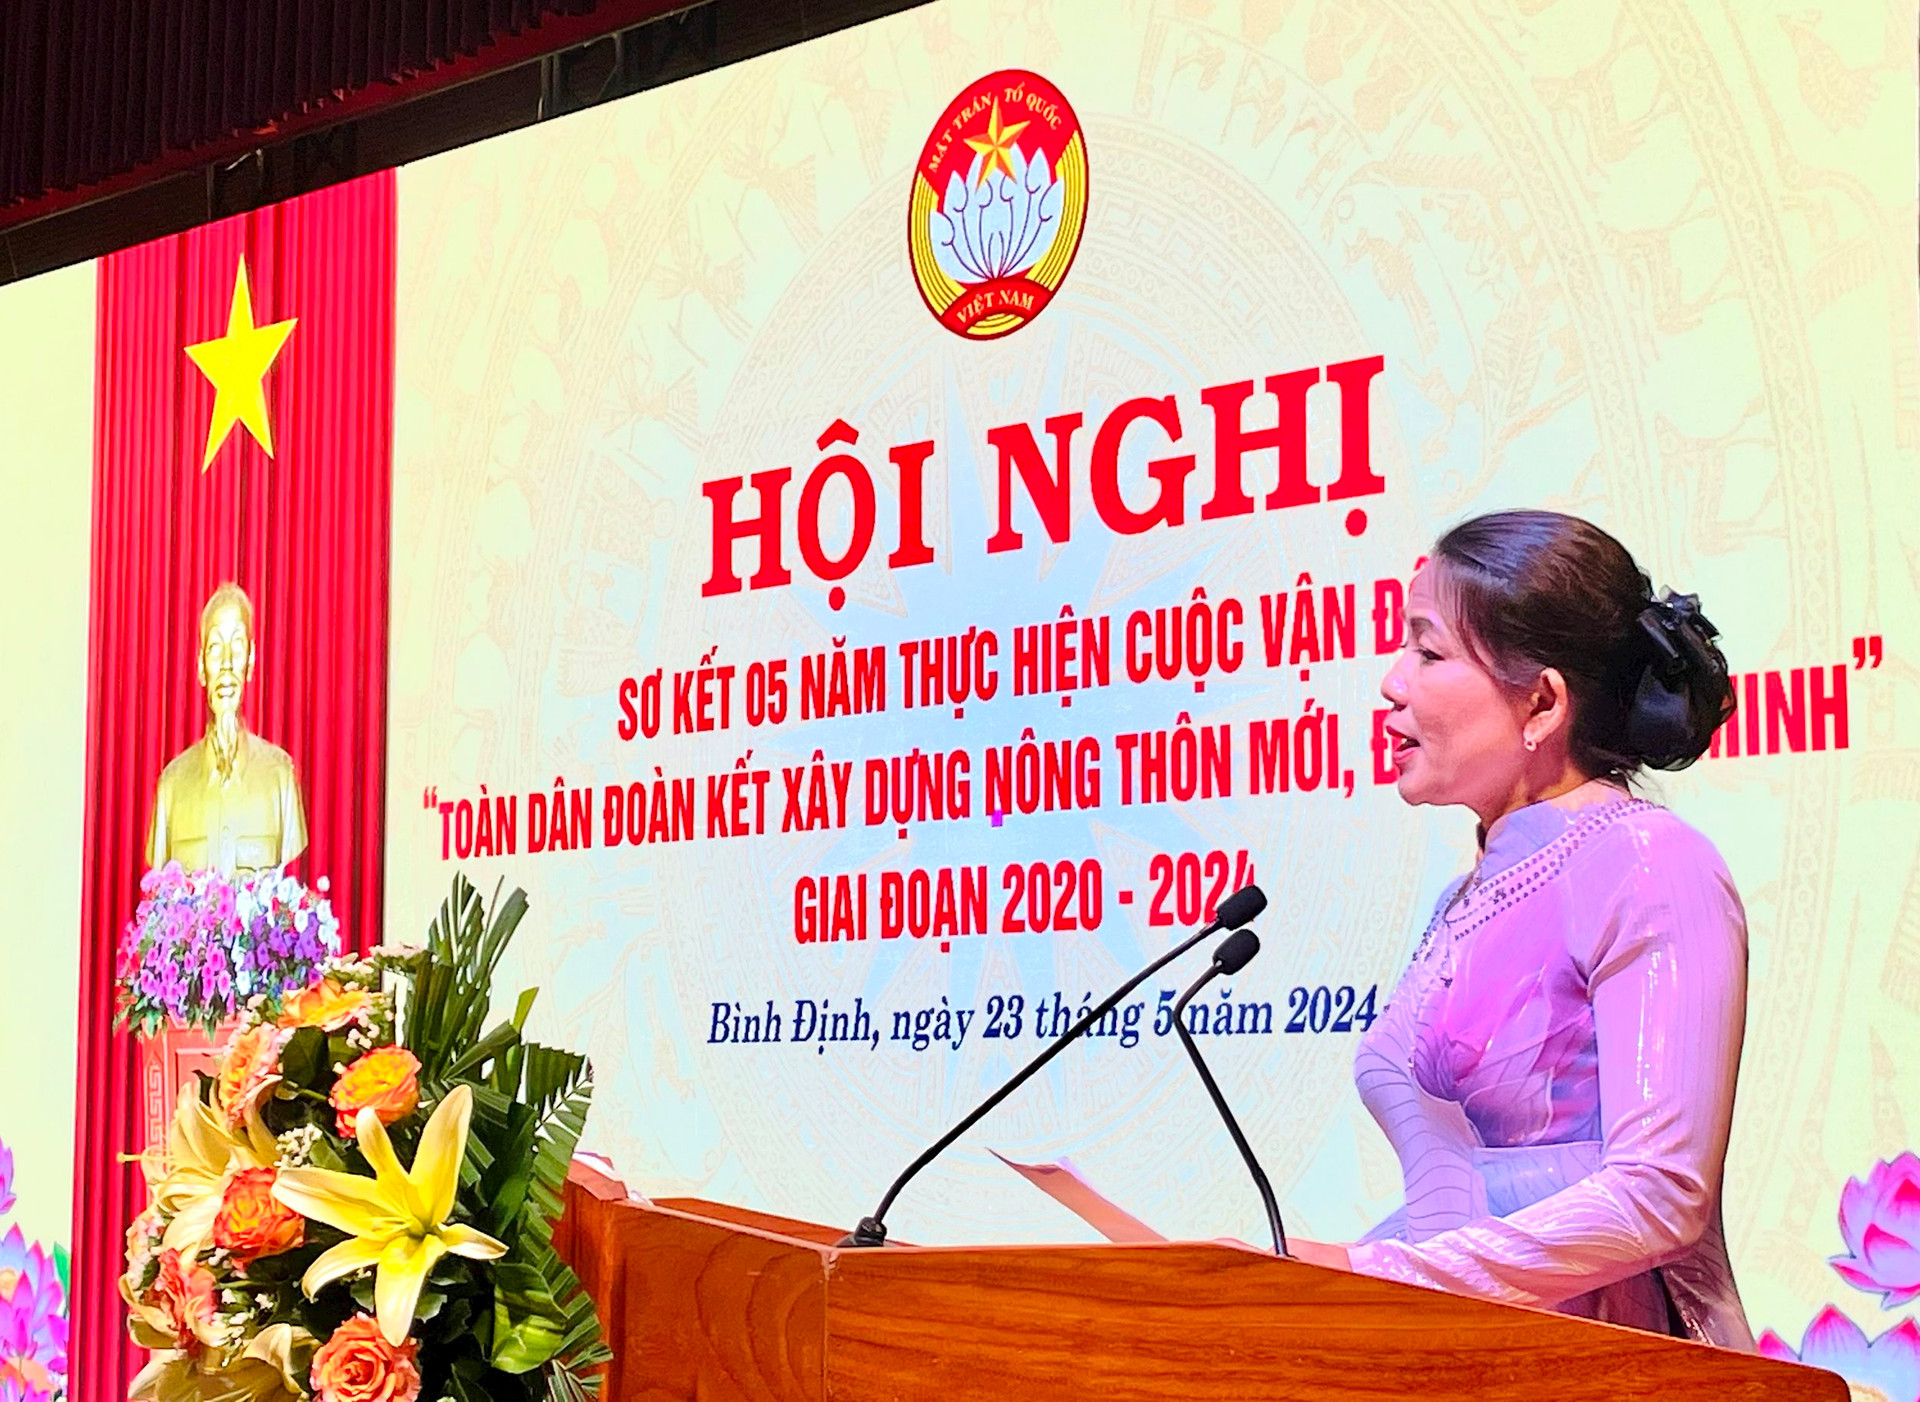 Bà Nguyễn Thị Phong Vũ, Chủ tịch Ủy ban MTTQ Việt Nam tỉnh Bình Định phát biểu kết luận Hội nghị.